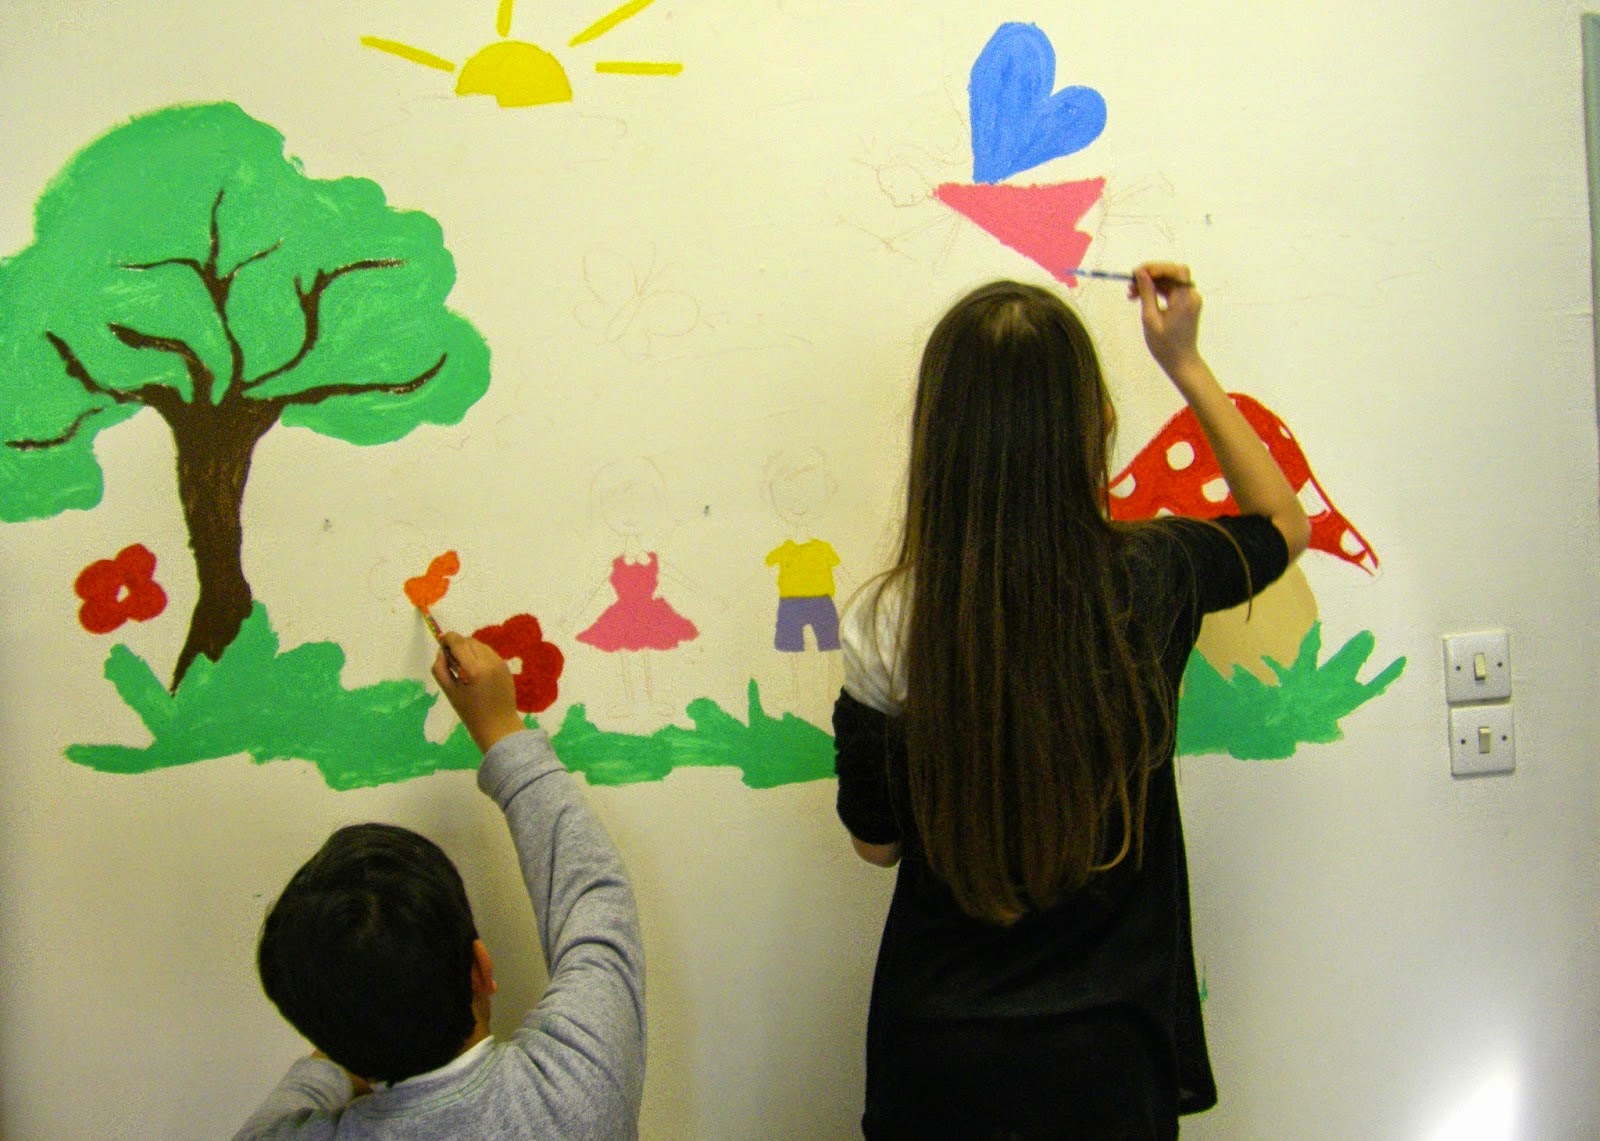 Μικροί μαθητές δημοτικού σχολείου ζωγράφισαν σε νοσοκομείο, για να ευχηθούν περαστικά στα άρρωστα παιδάκια - Φωτογραφία 1